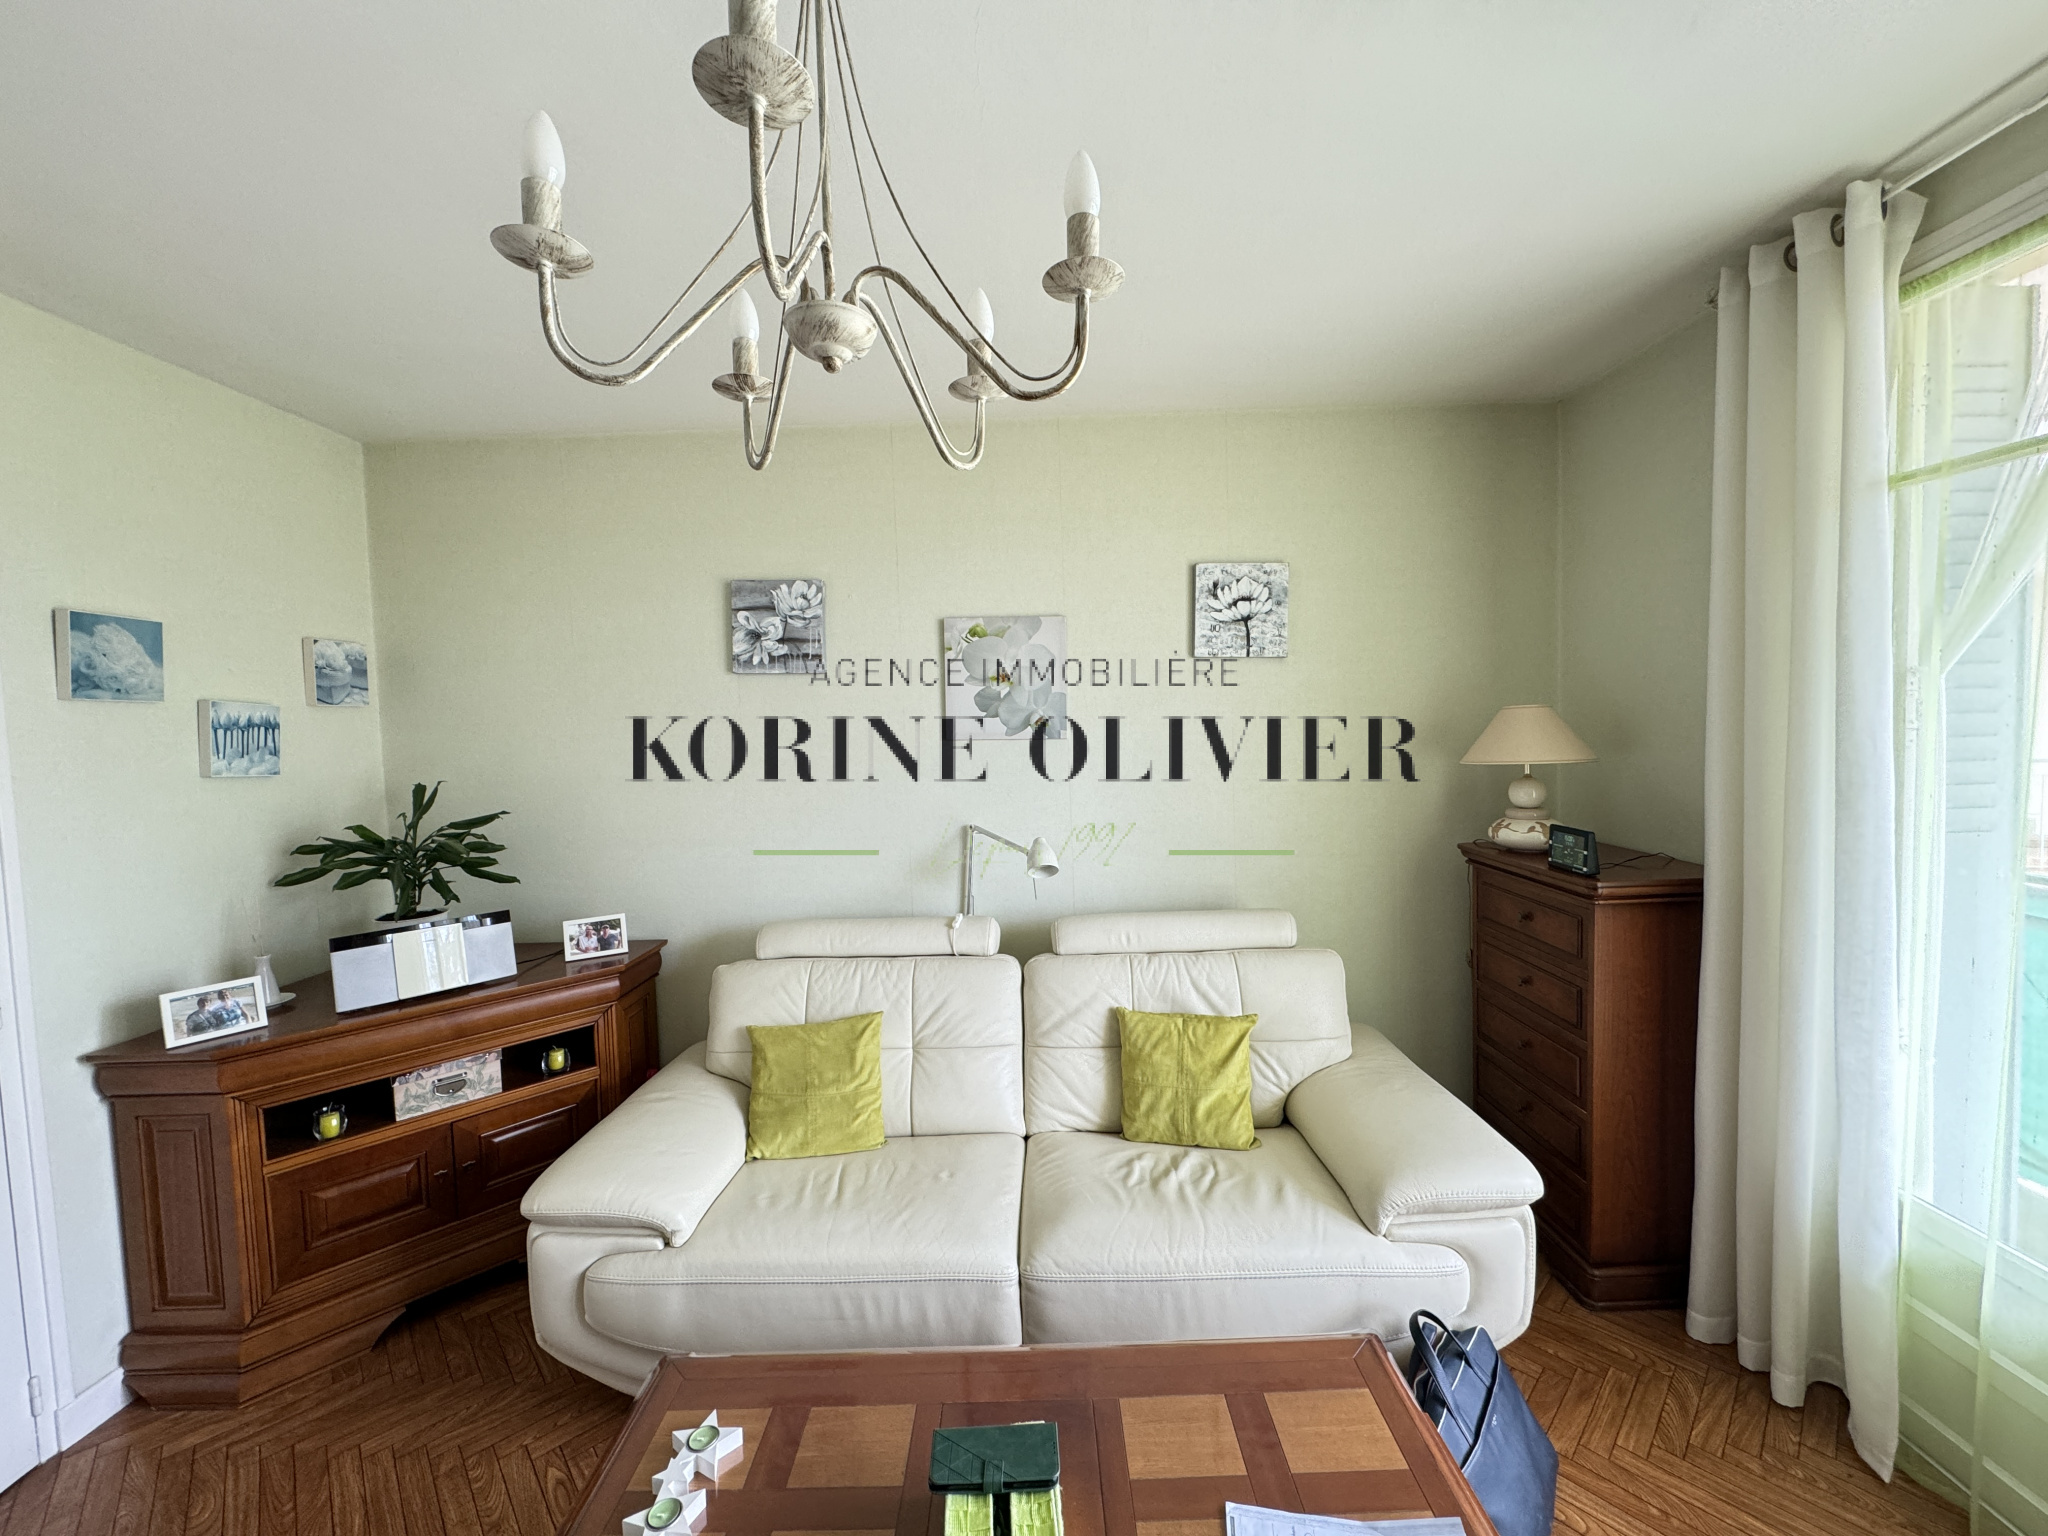 Vente Appartement 49m² 2 Pièces à Bourg-lès-Valence (26500) - Korine Olivier